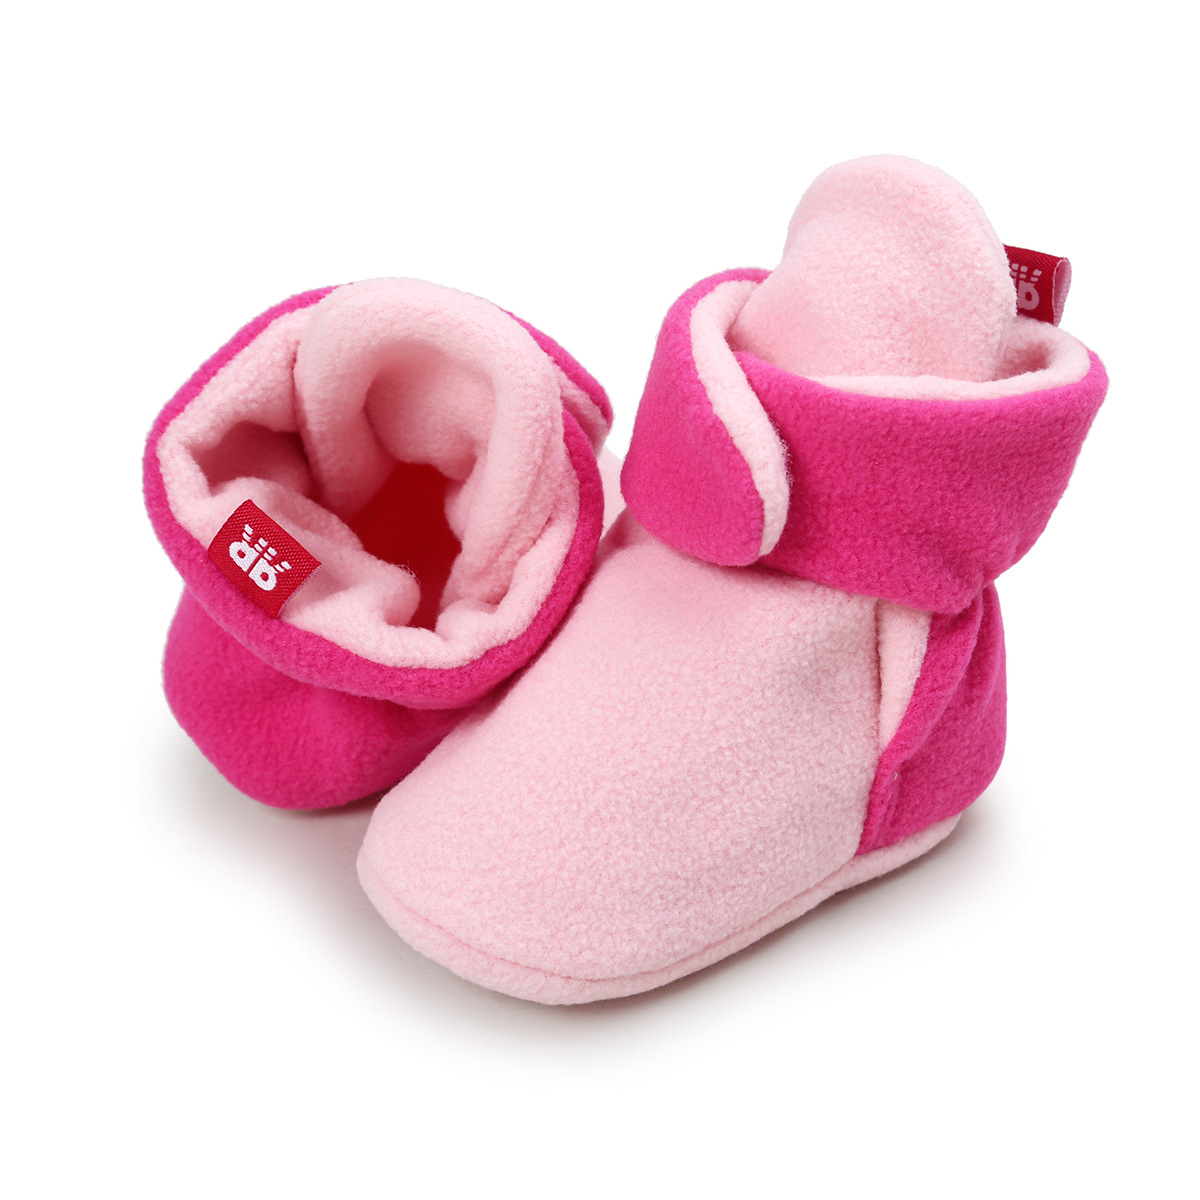 Chaussures bébé en coton - Ref 3436821 Image 41